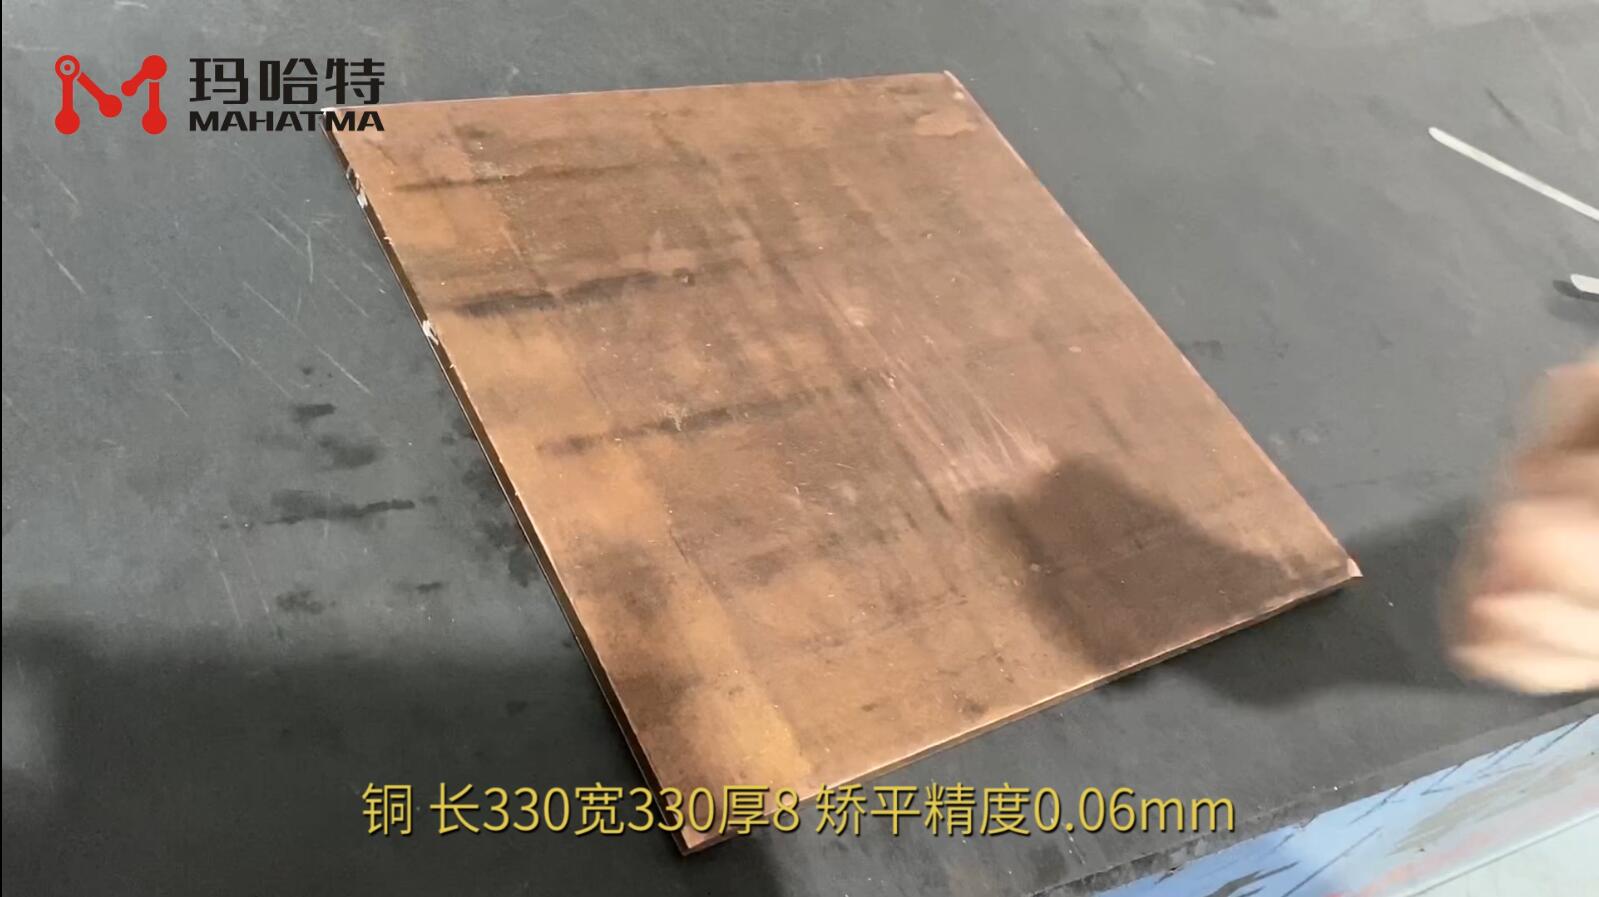 铜 长方形 MHT120-1300 长330宽330厚8 矫平精度0.06mm